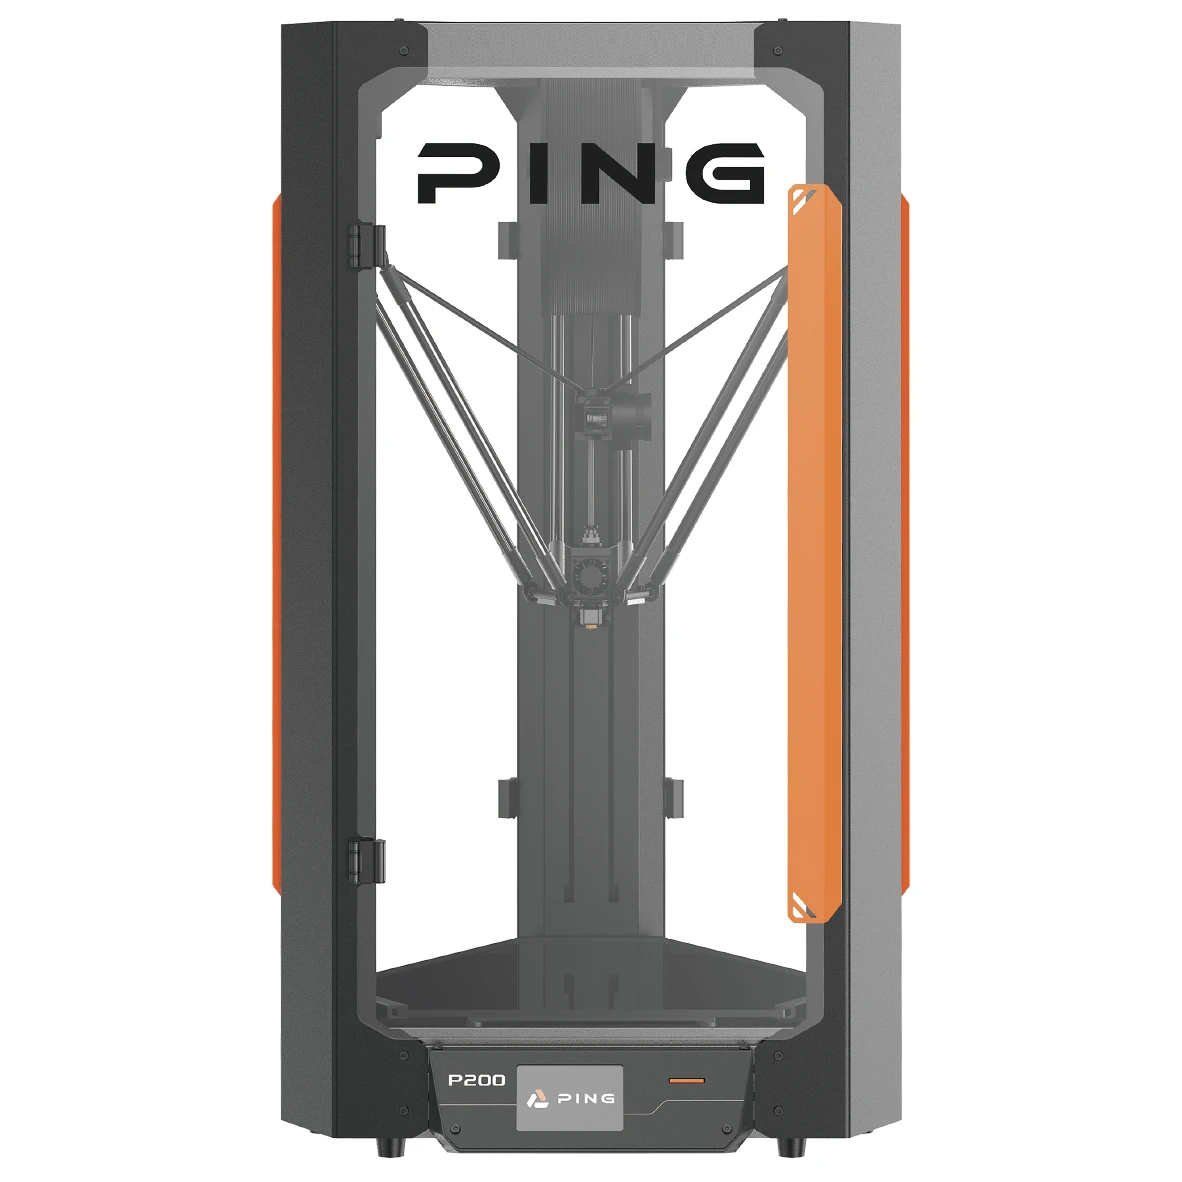 PING P200 3D列印機